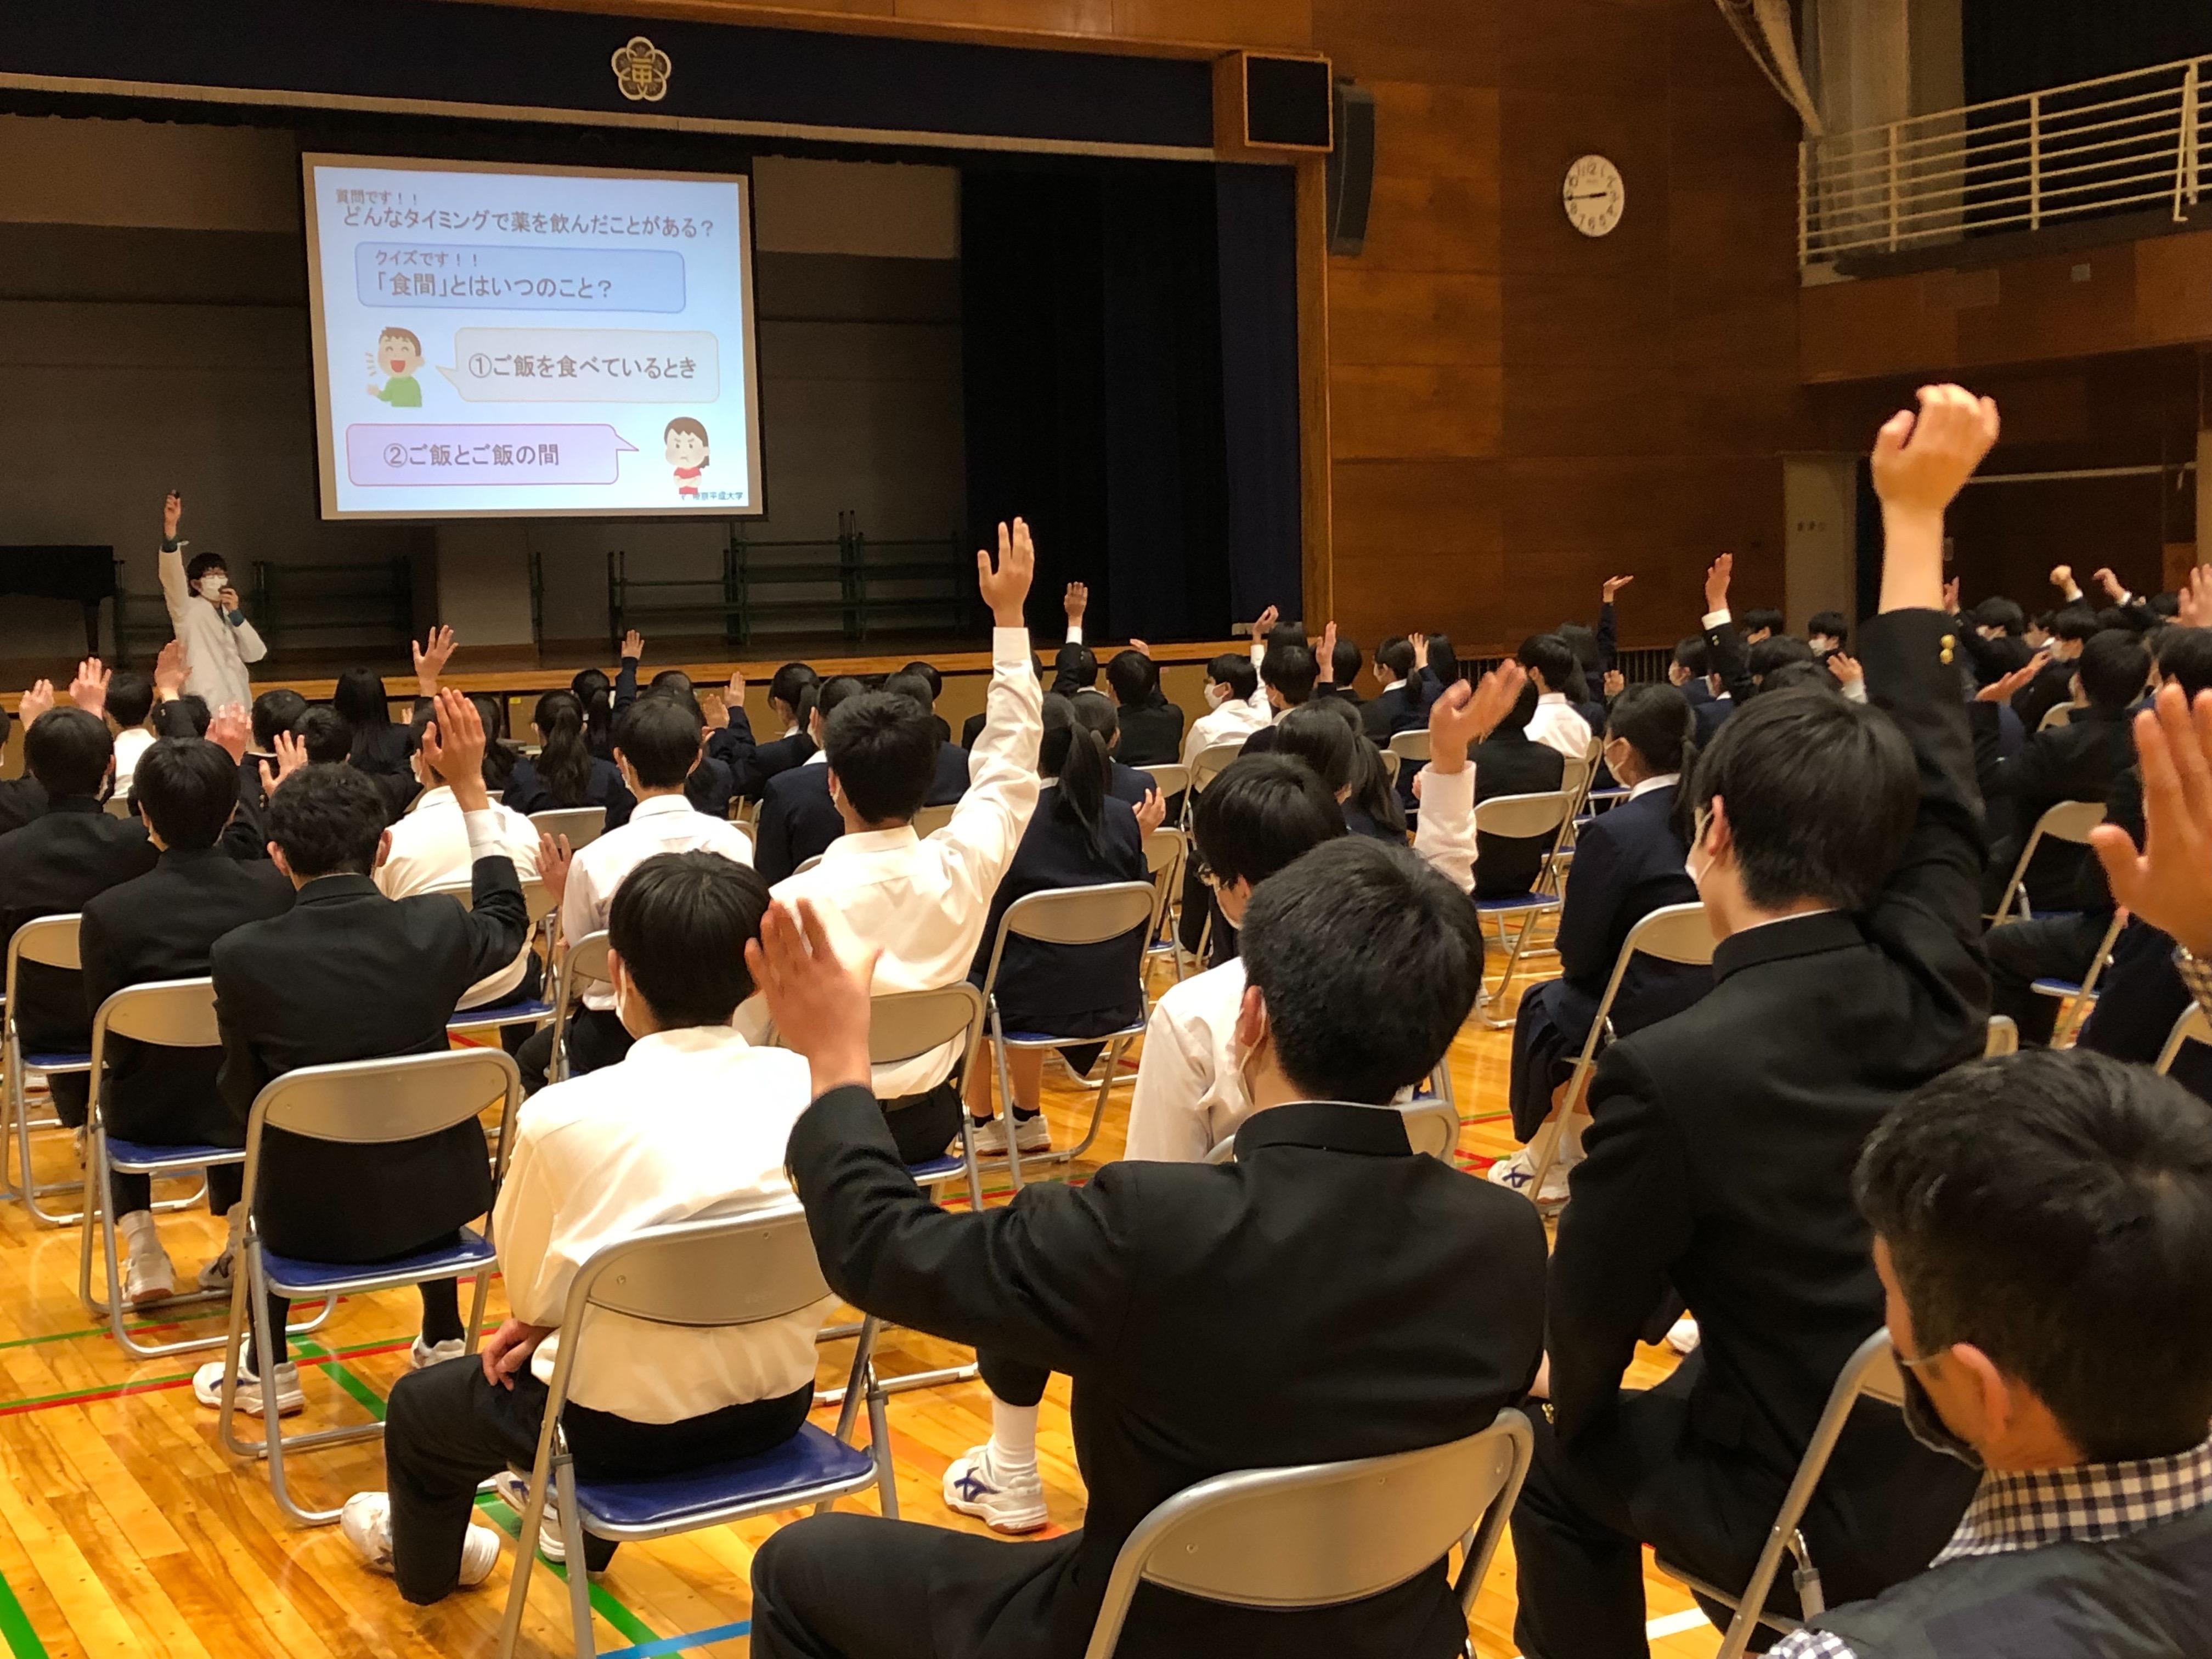 帝京平成大学薬学部の学生が中野区立第二中学校で「薬育」の出前授業を実施 -- 薬物乱用防止をテーマに講義